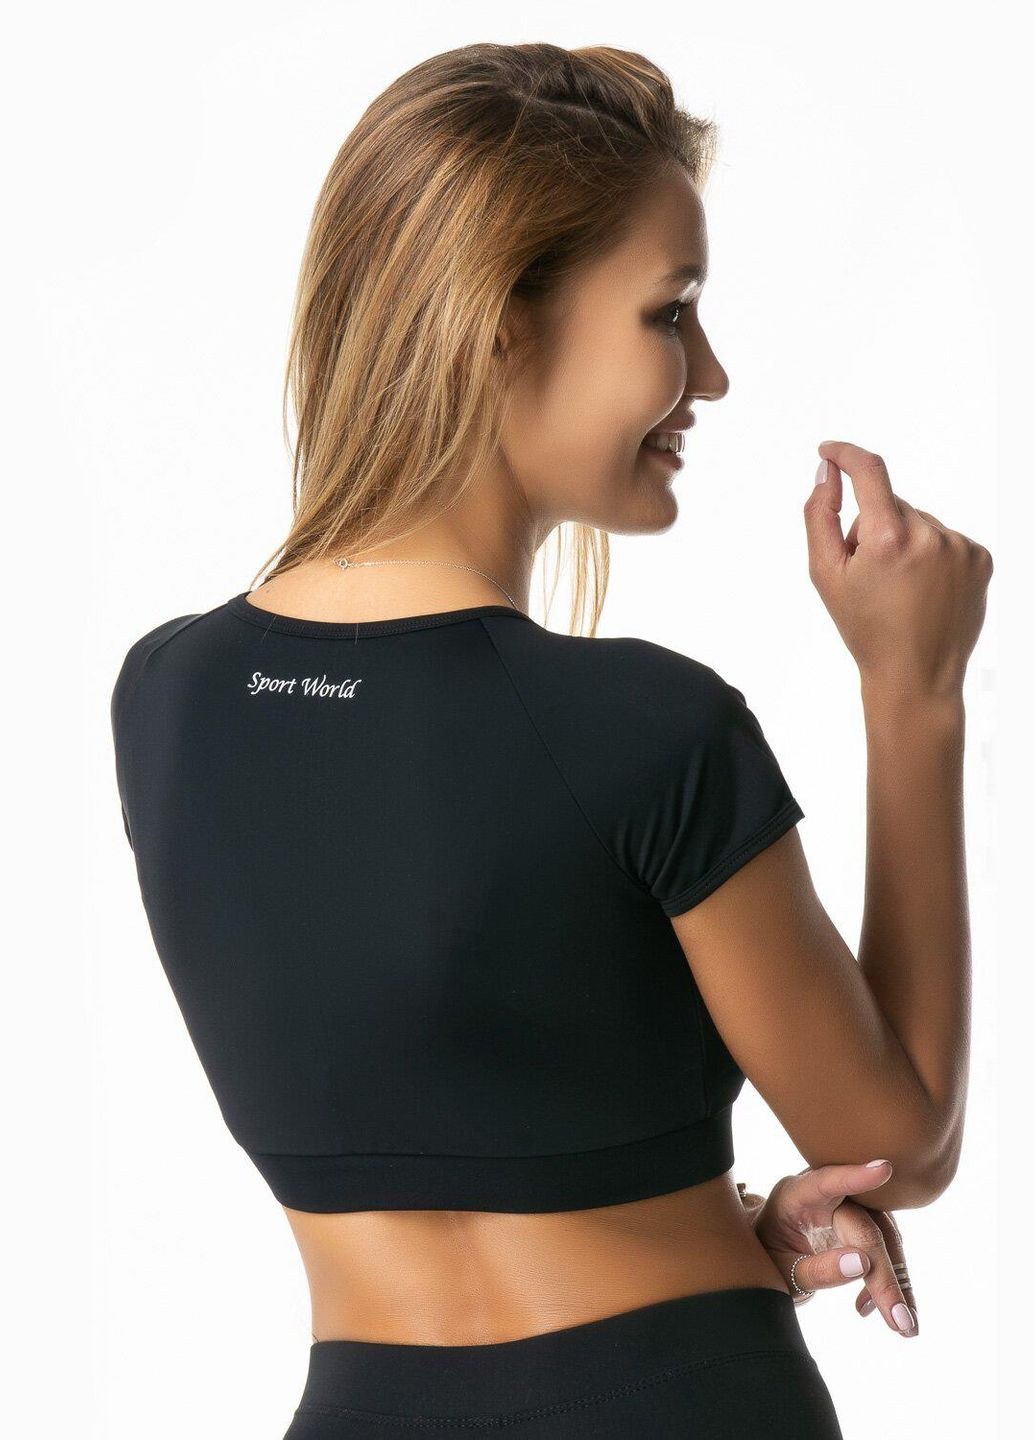 Женский спортивный топ-футболка черный топ для фитнеса с коротким рукавом XS Opt-kolo (286330521)